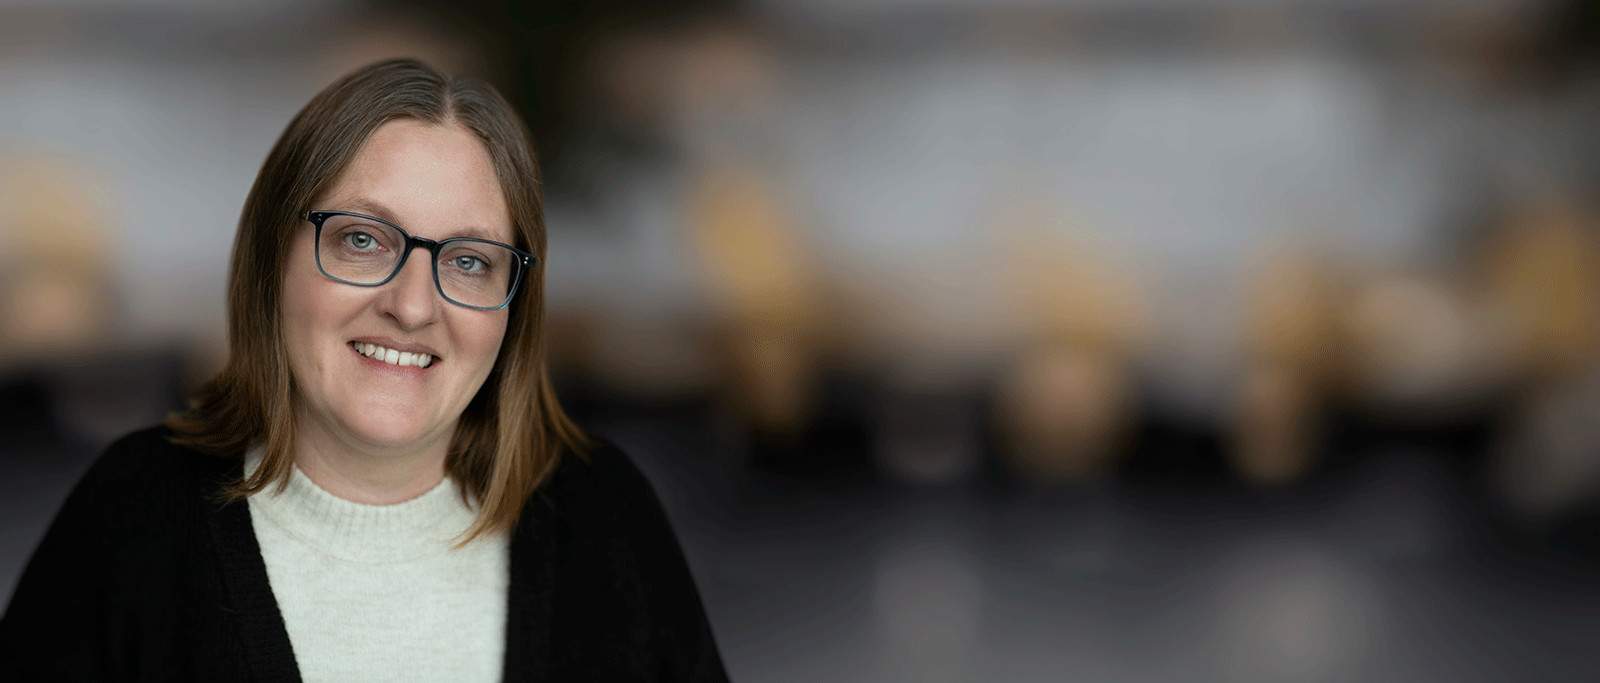 Finance Assistant at Lundgrens Maria Sørensen